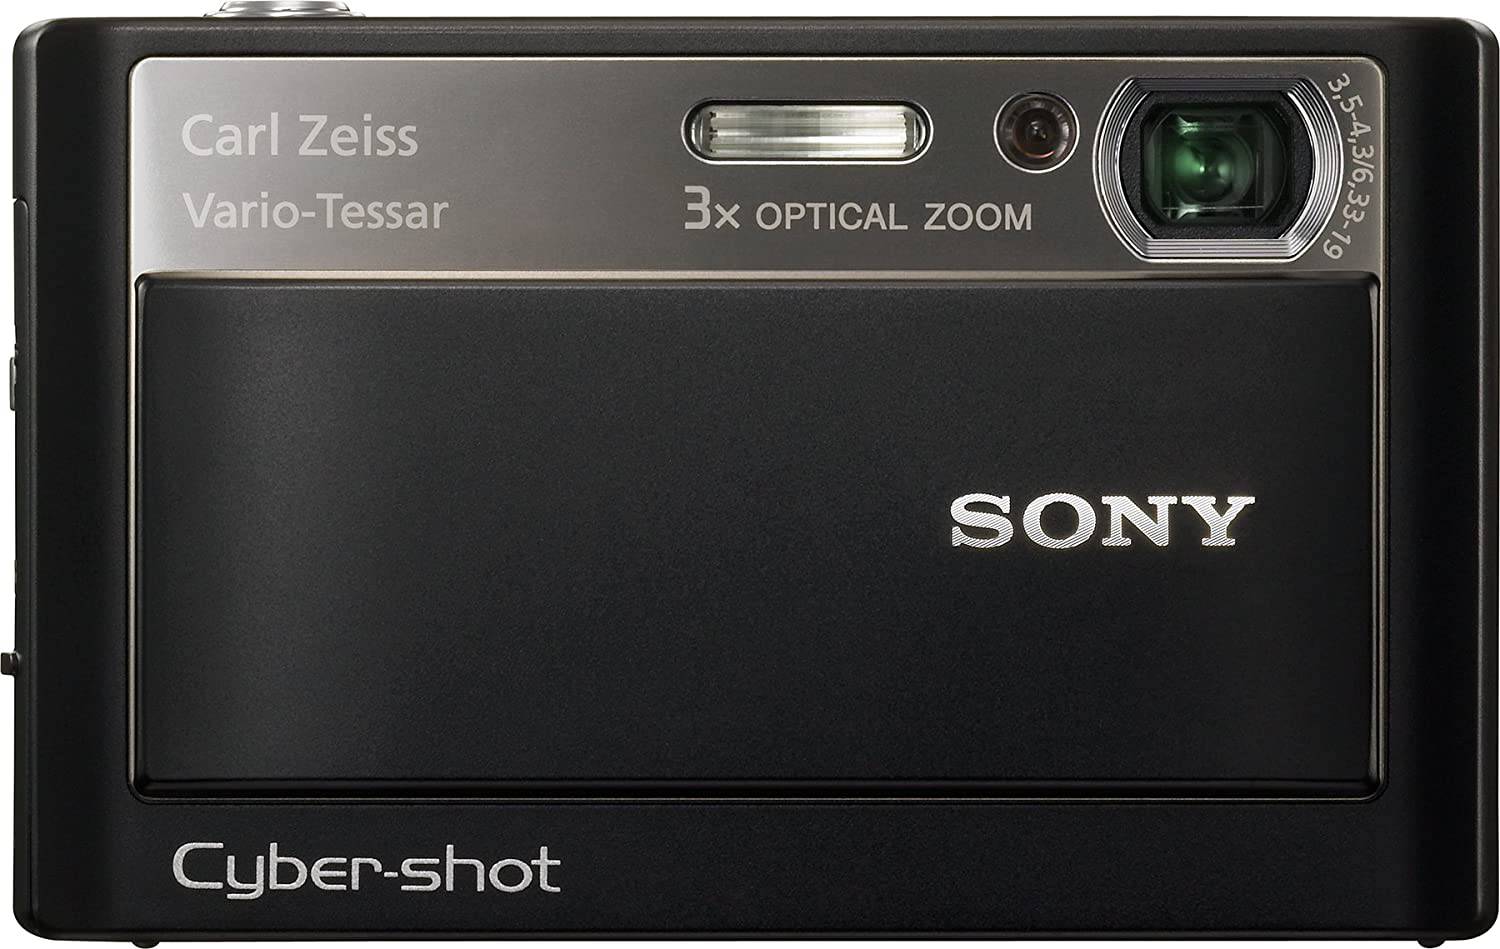 Sony D-T20